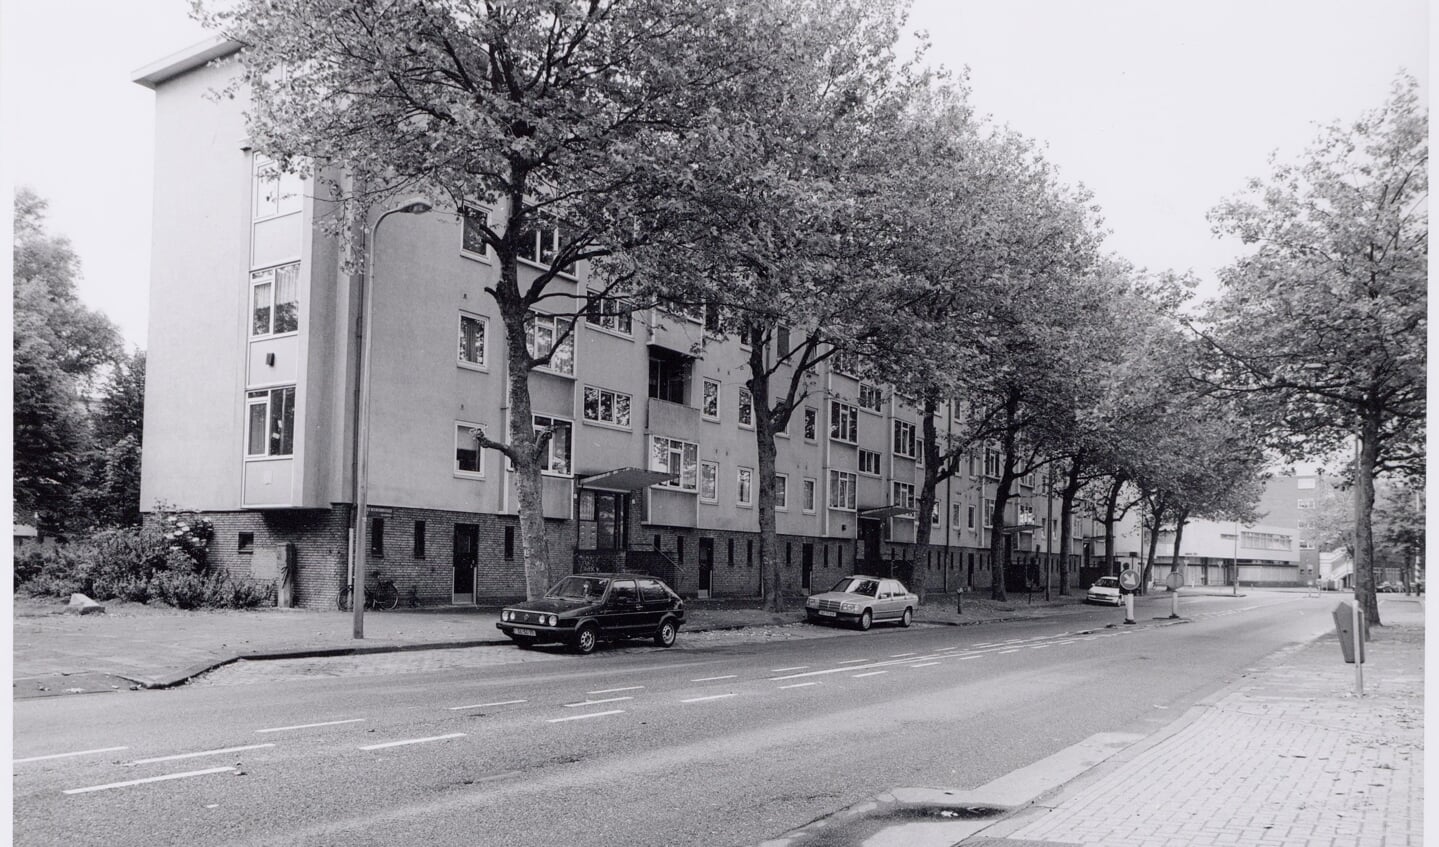 Ruys de Beerenbrouckstraat in juni 2001.